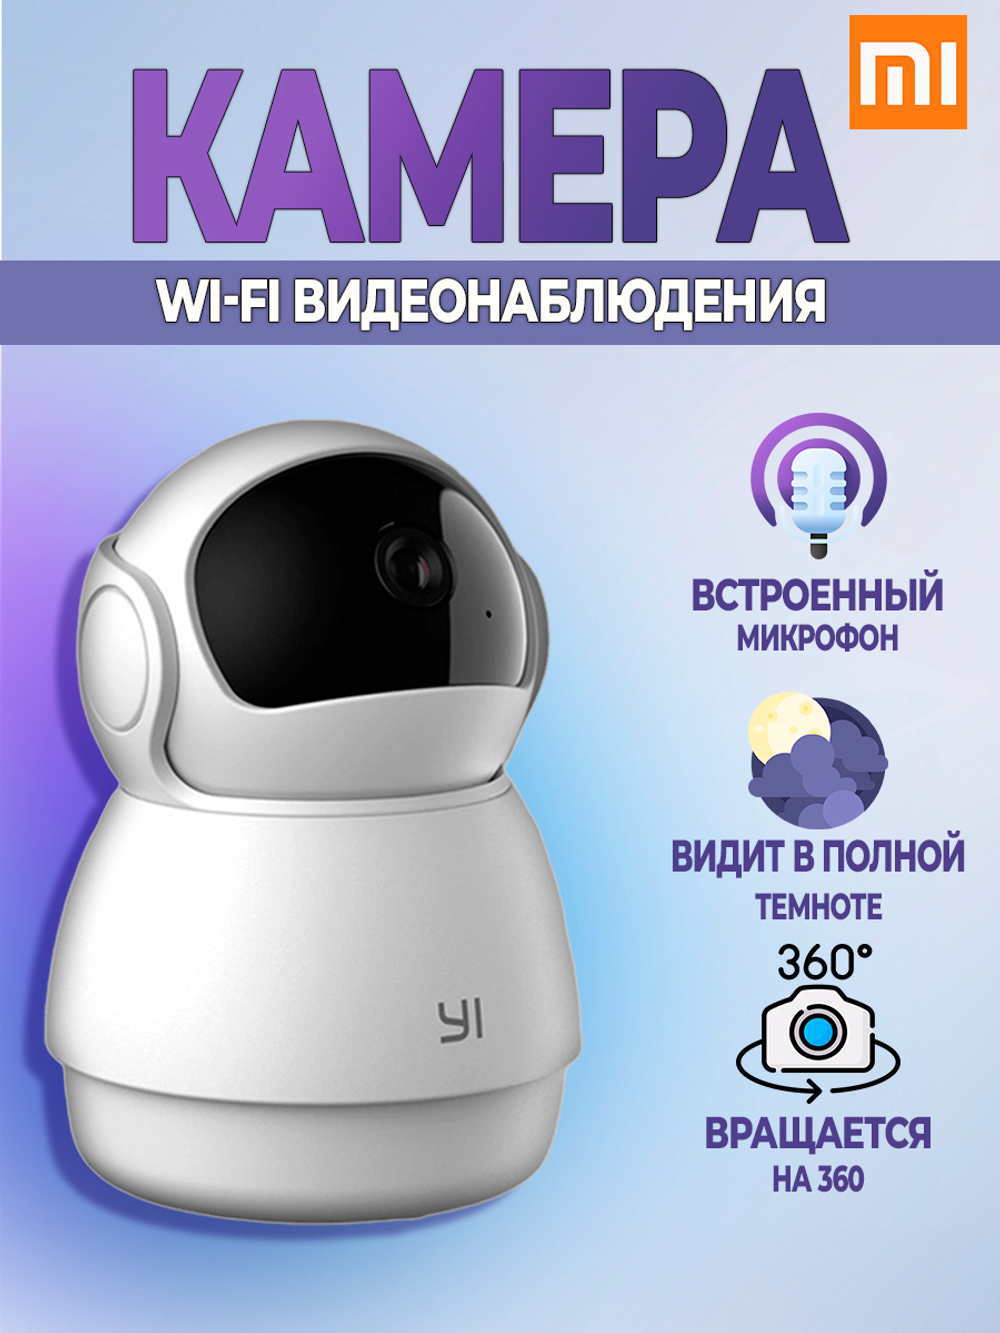 Камера видеонаблюдения/ видеоняня для дома wi fi поворотная IP (Mi суббренд Xiaomi)